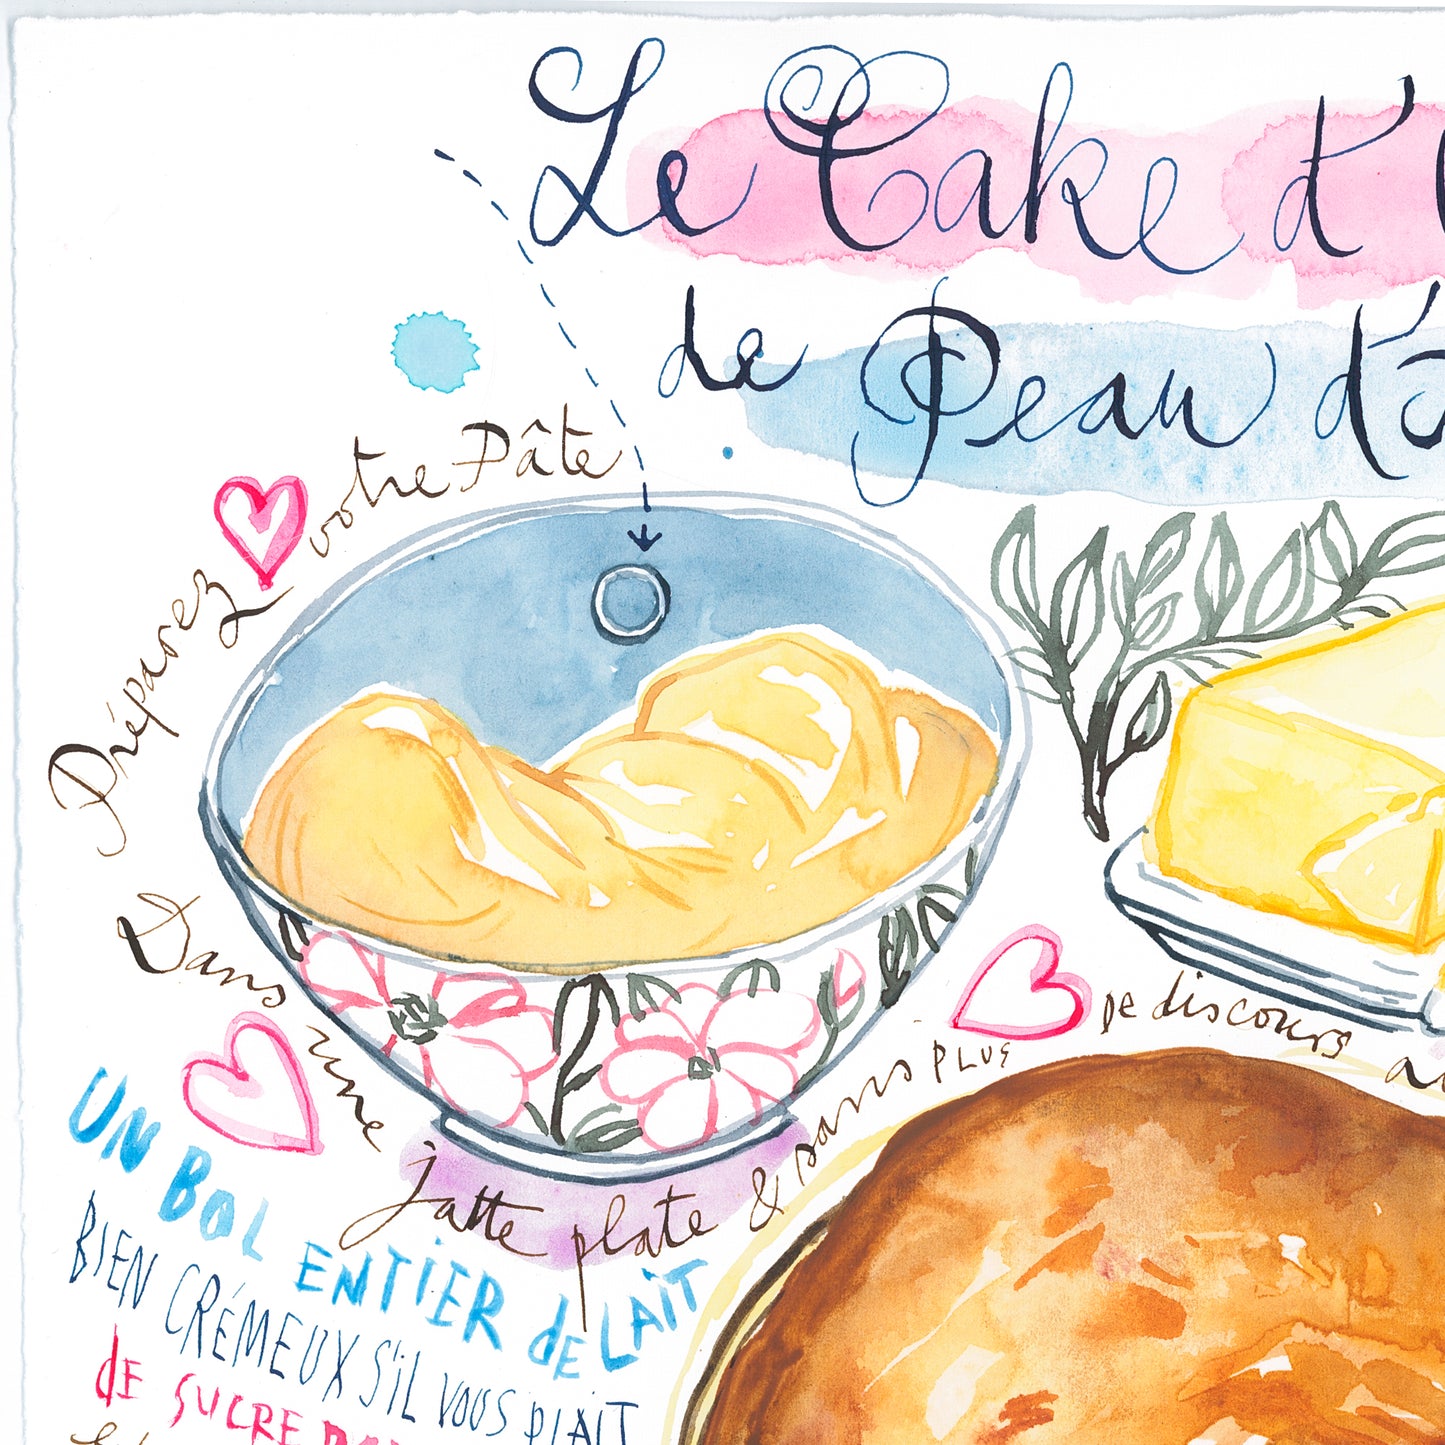 La recette du Cake d'Amour de Peau d'Âne. Original watercolor painting